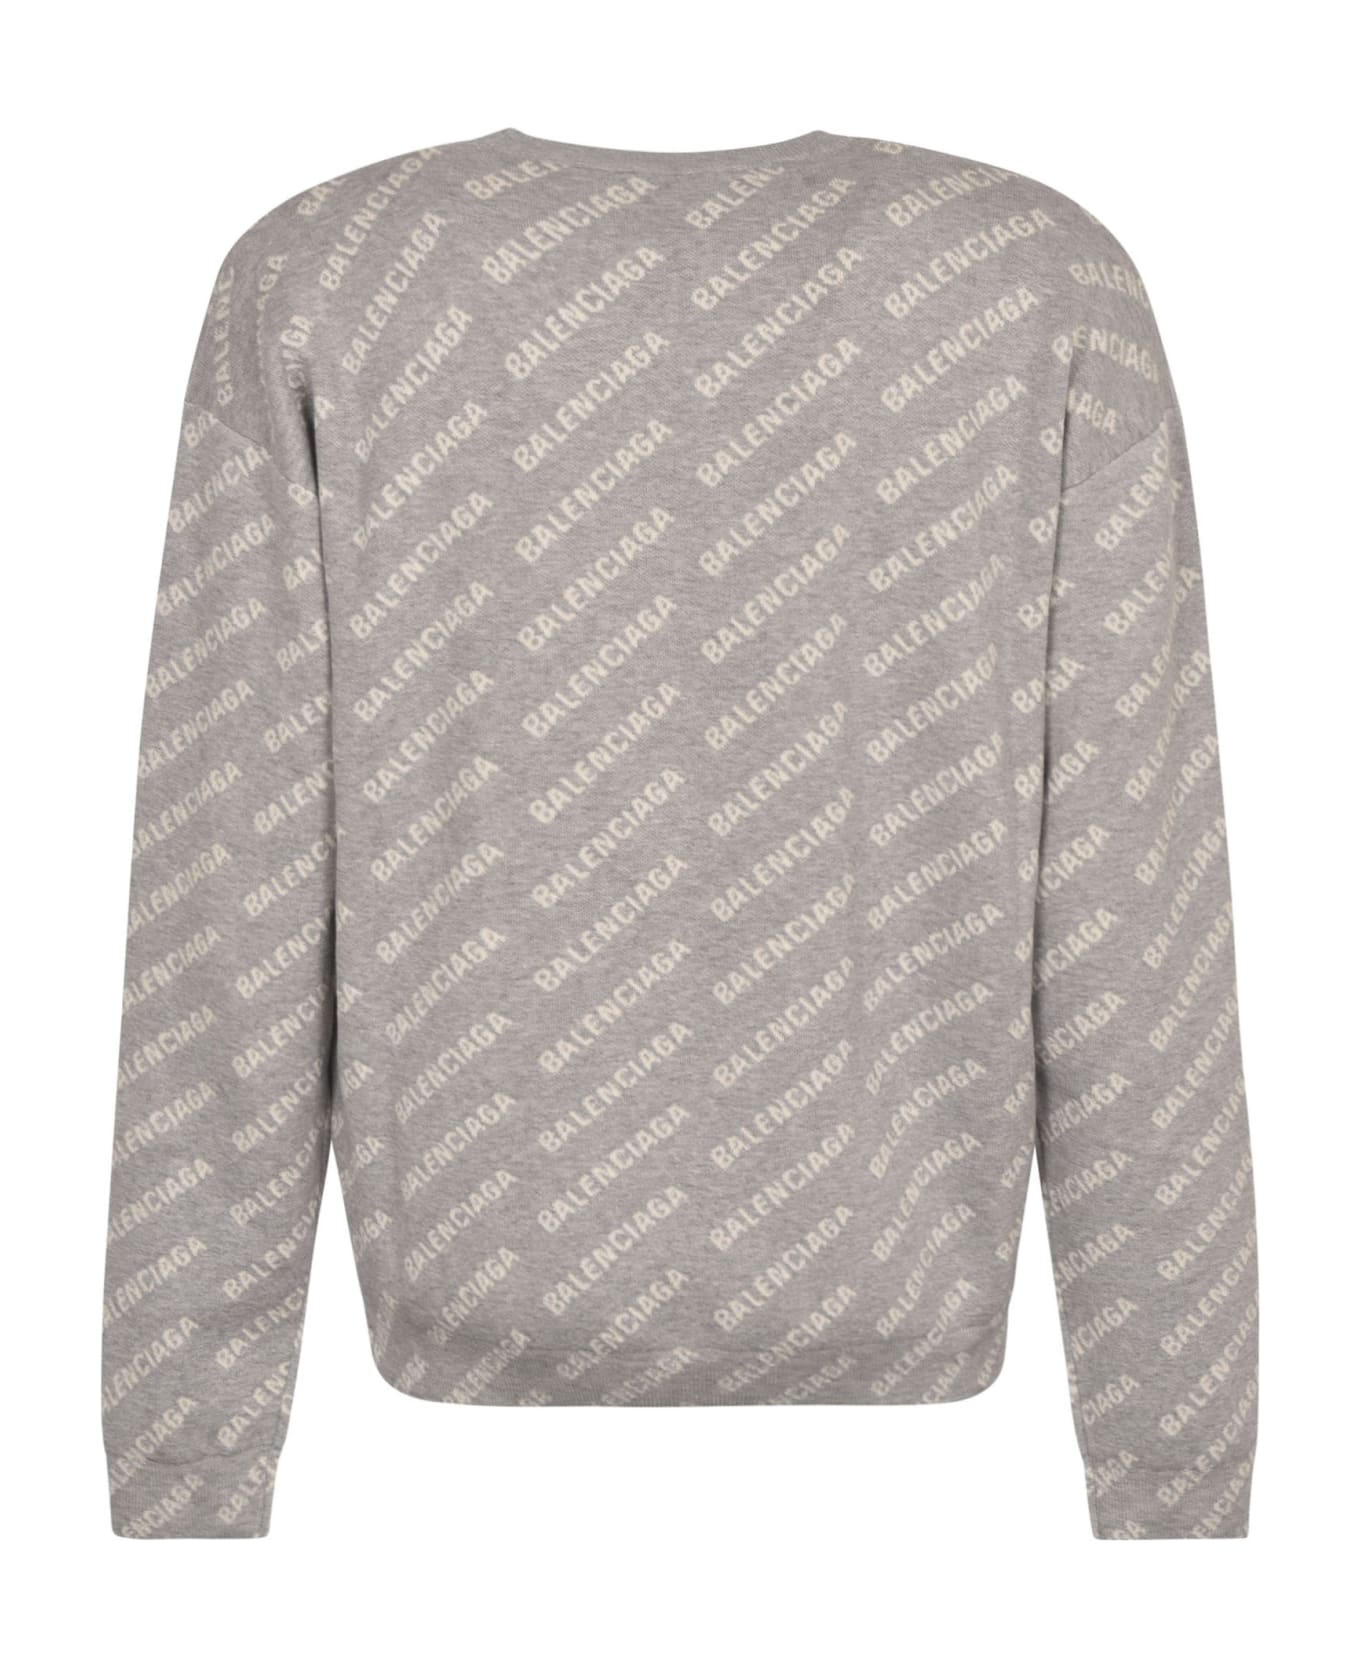 Balenciaga All-over Logo Sweater - Grey/White